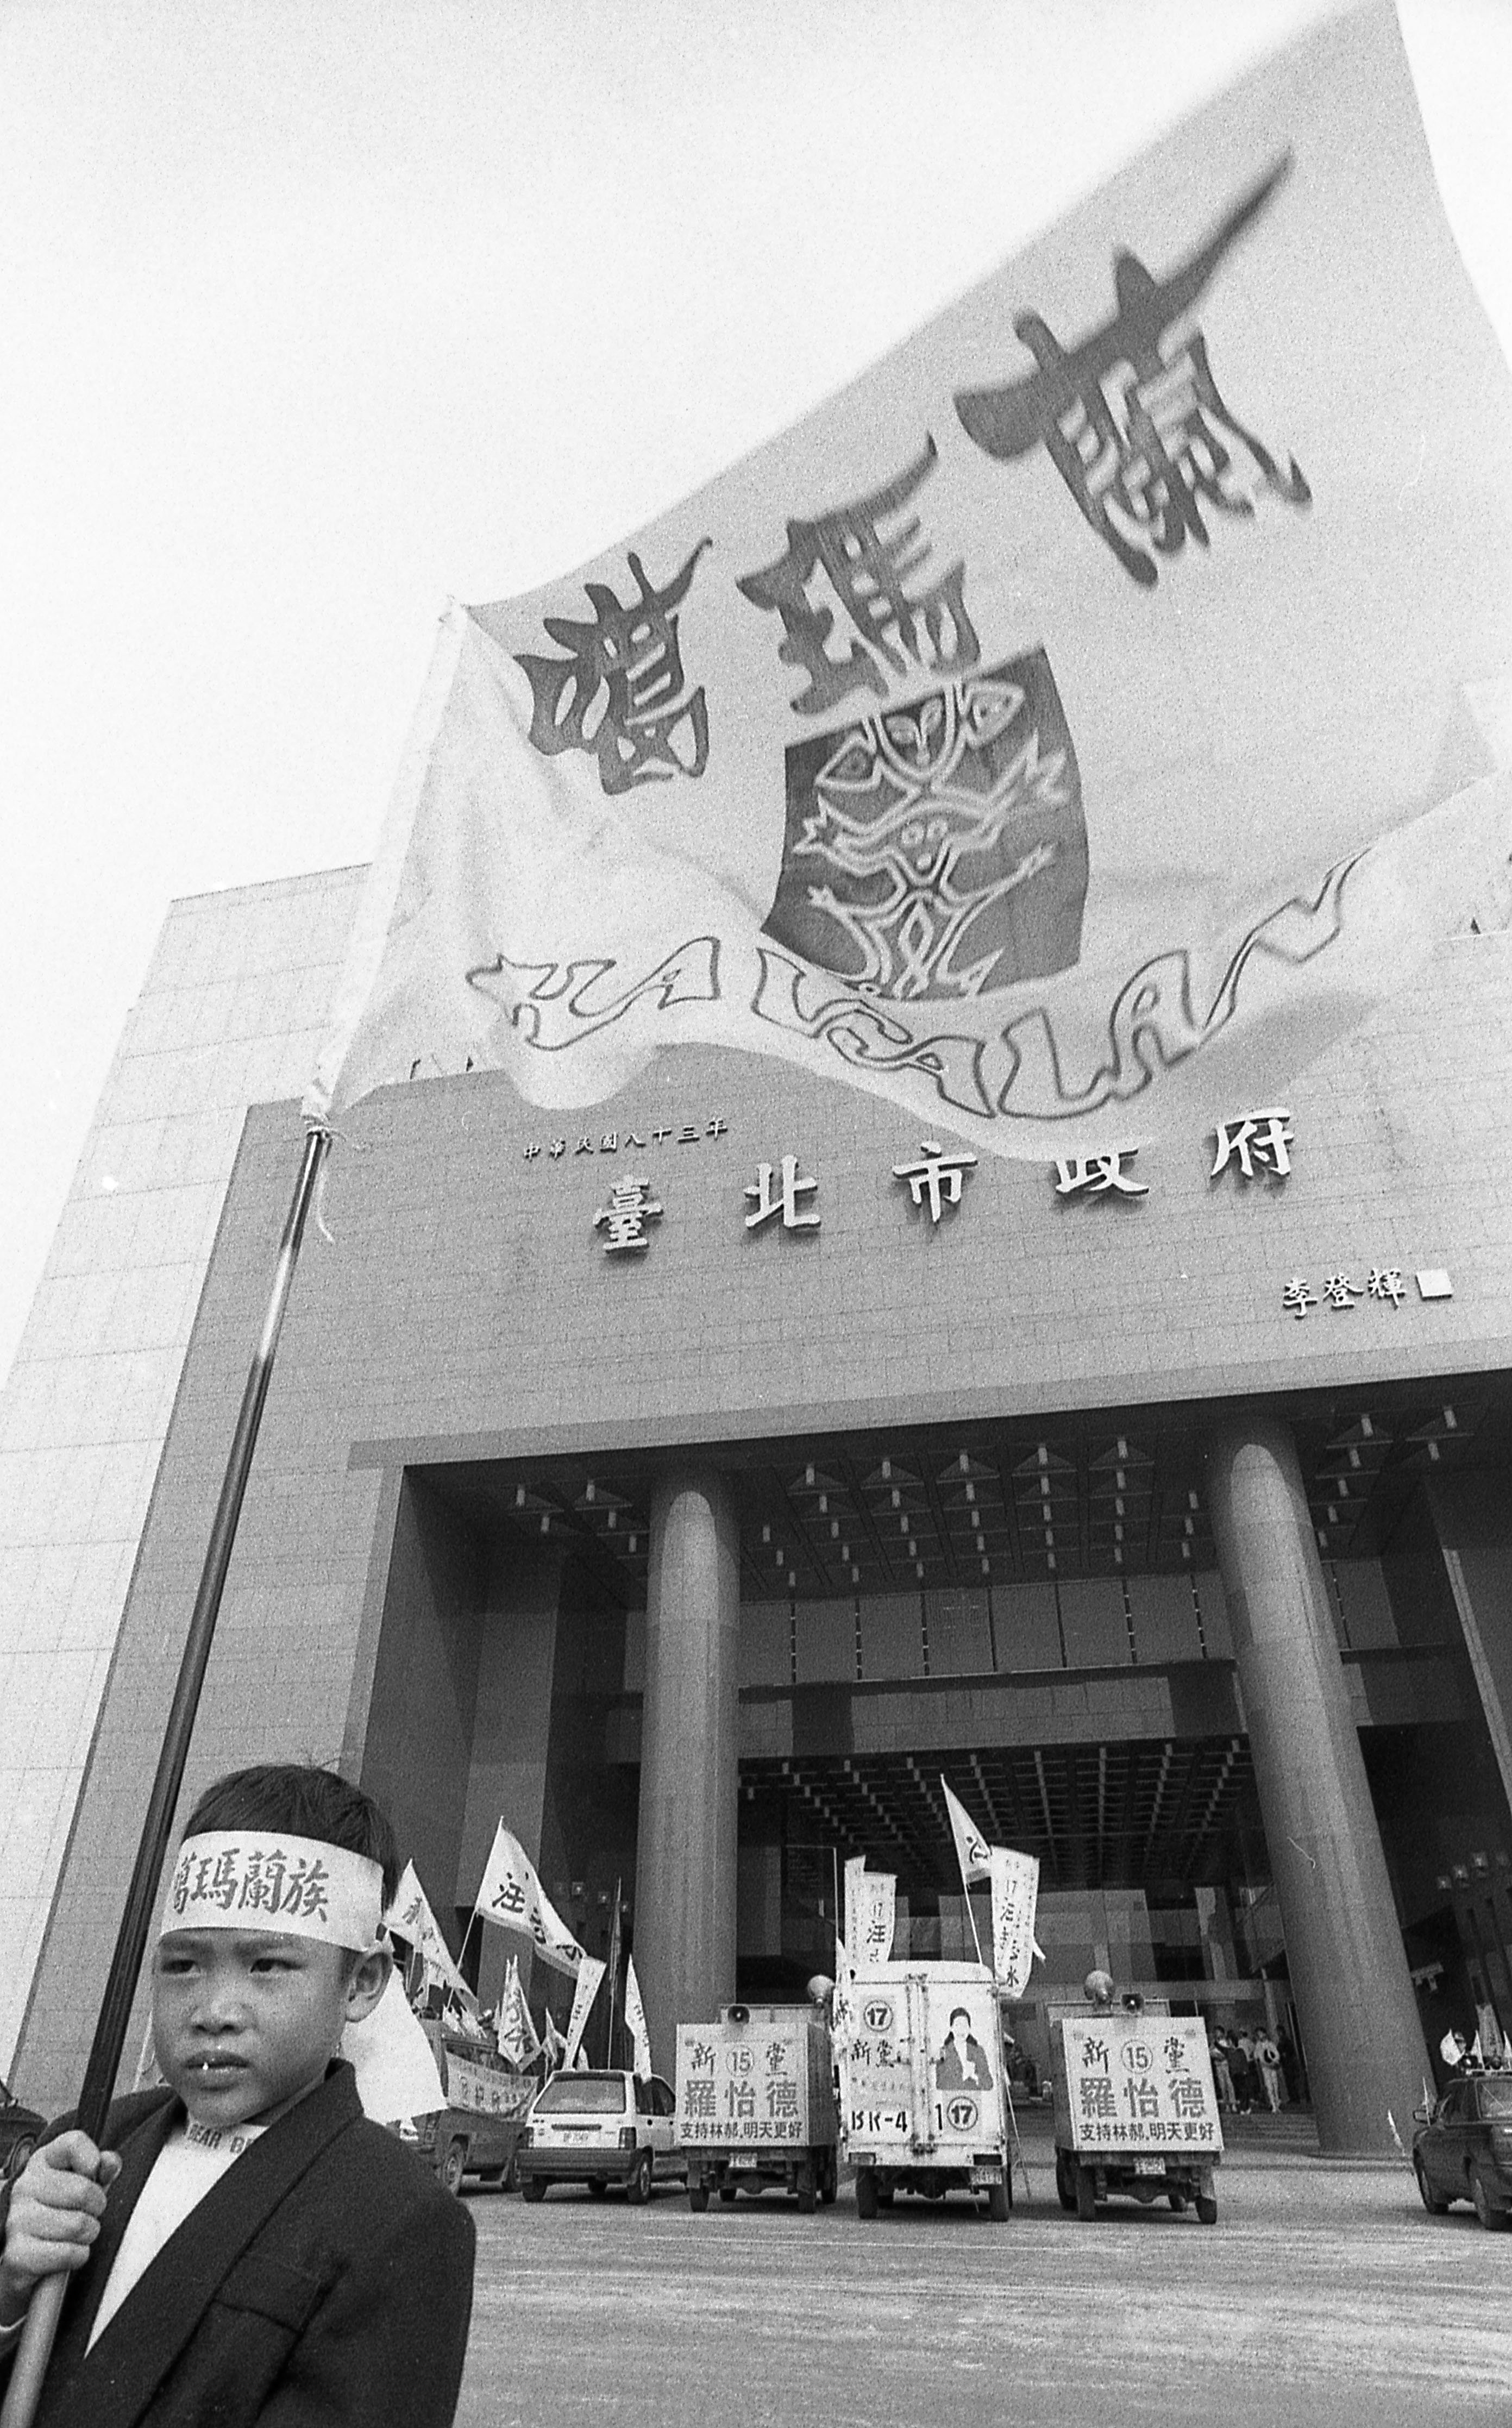 1996年3月14日,旅北噶瑪蘭族後裔到台北市政府與內政部,要求認定噶瑪蘭族